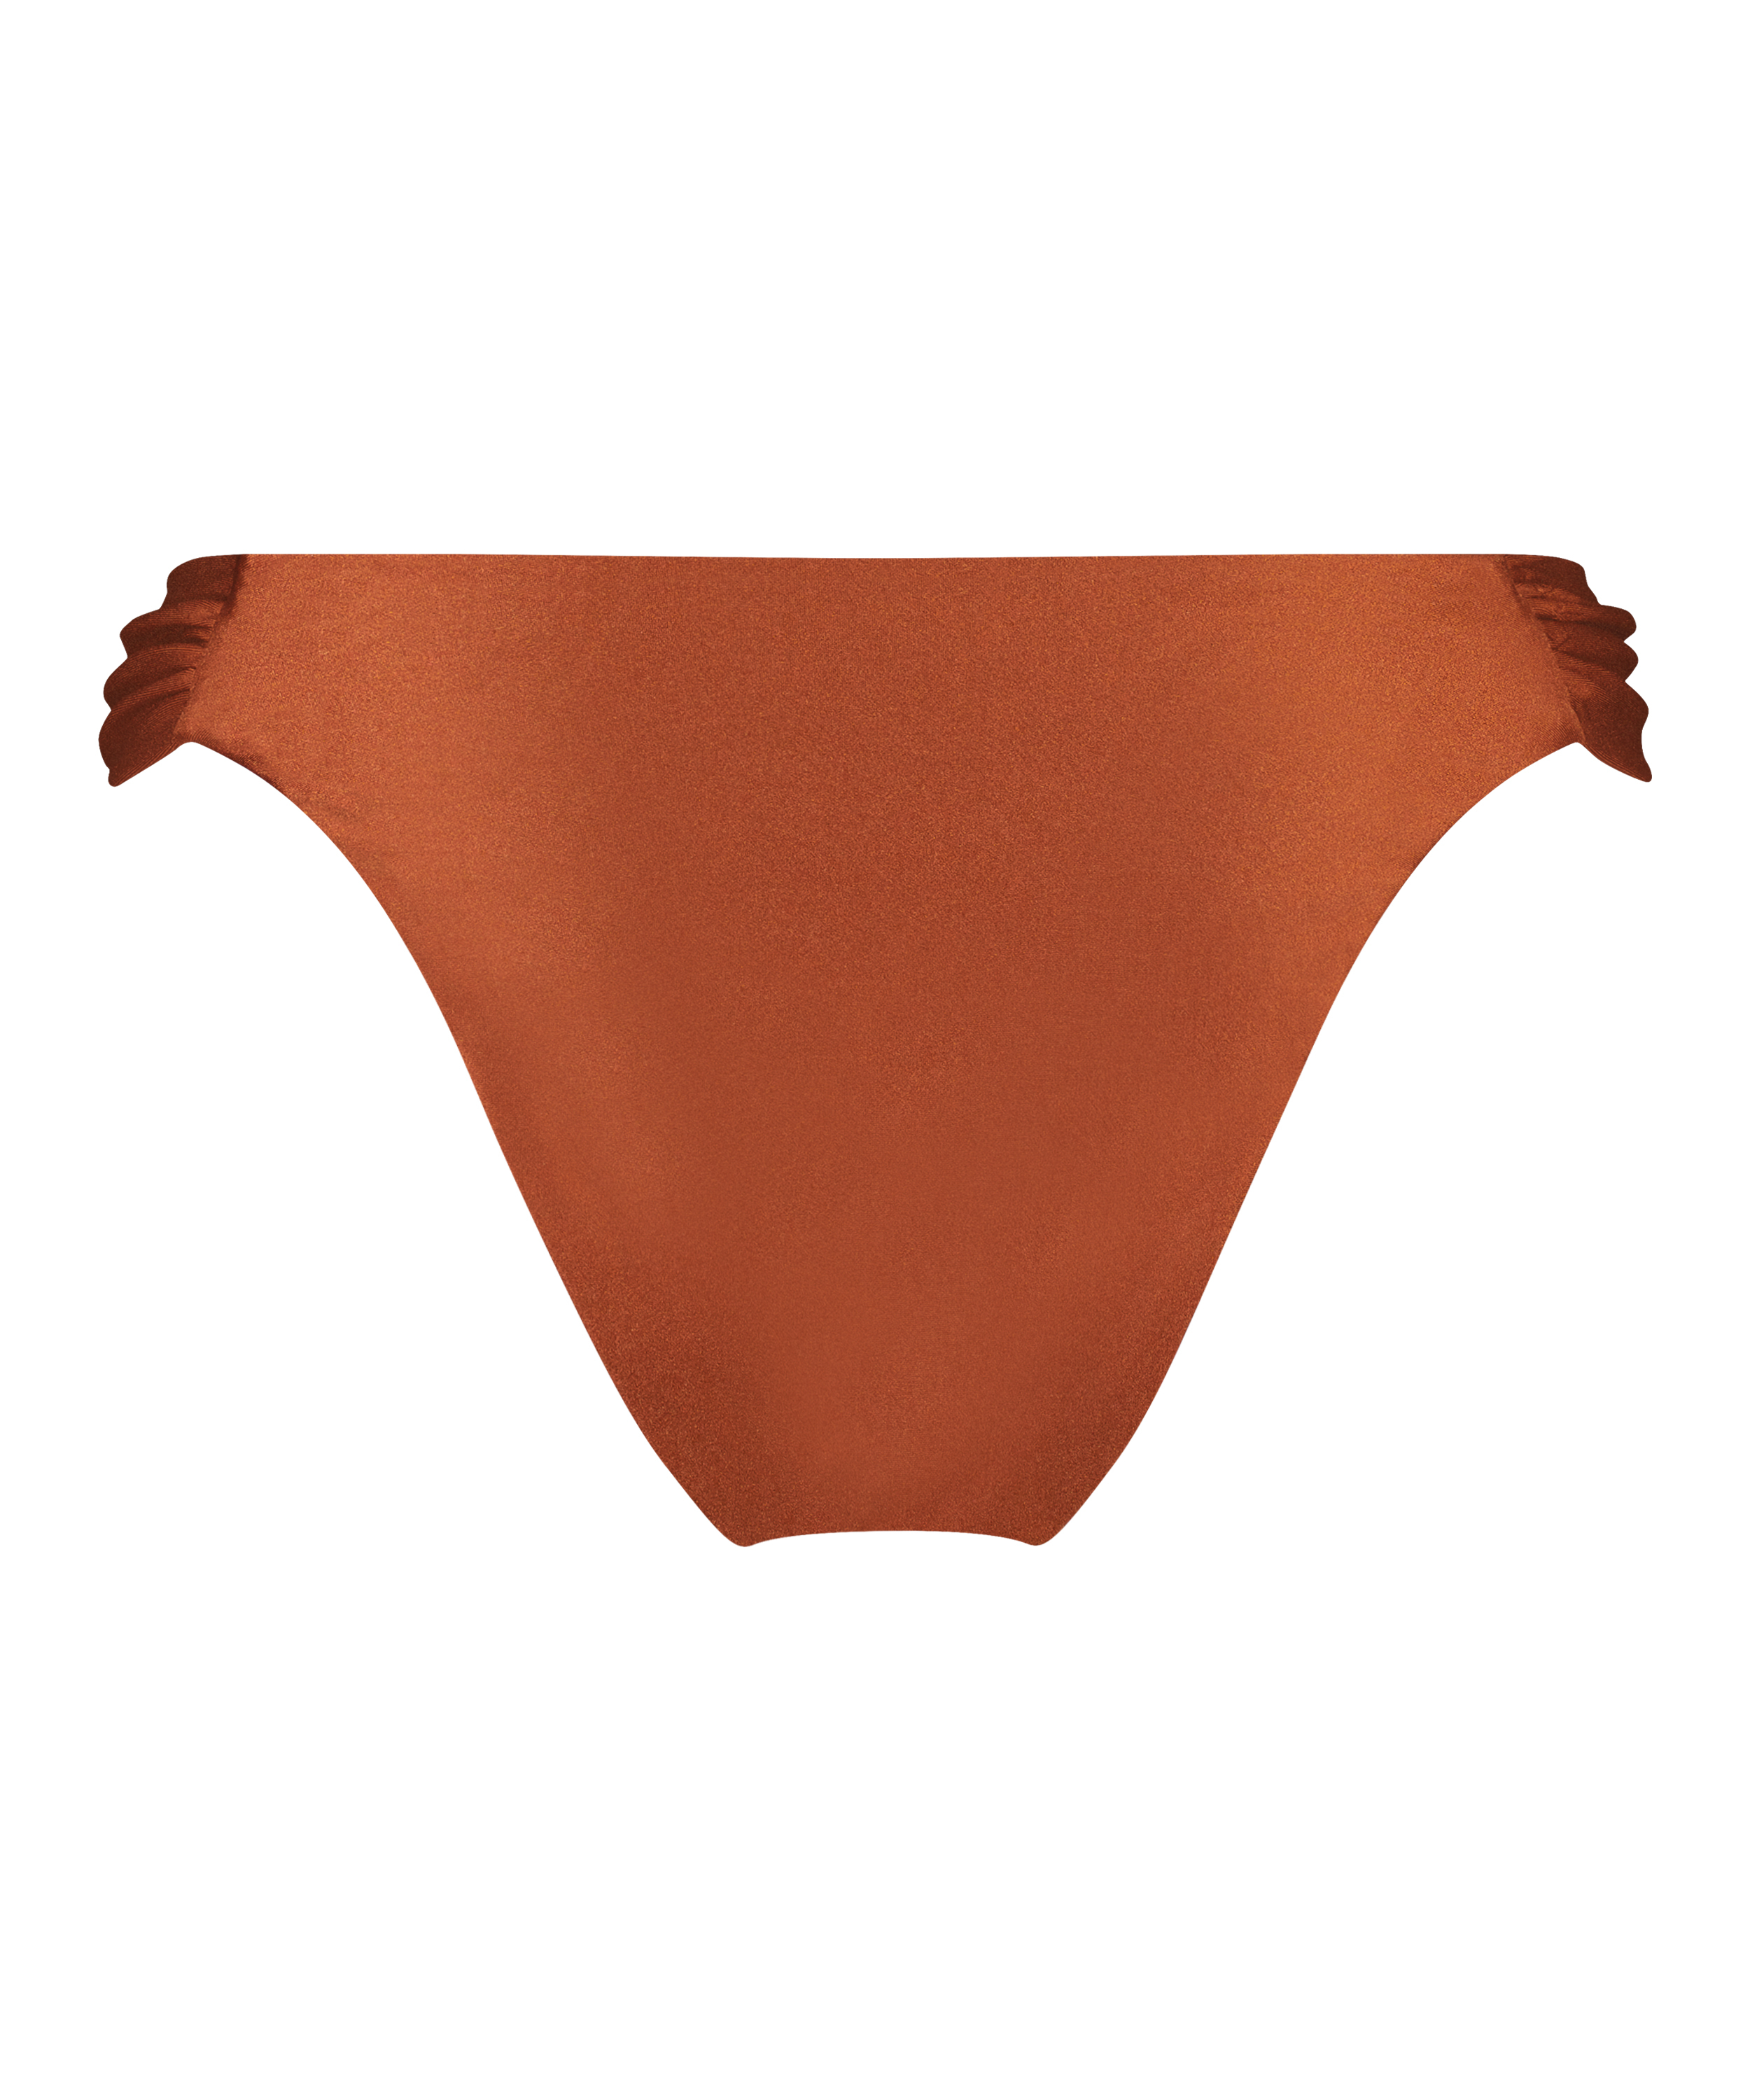 High-cut bikini bottoms Sahara, Brown, main